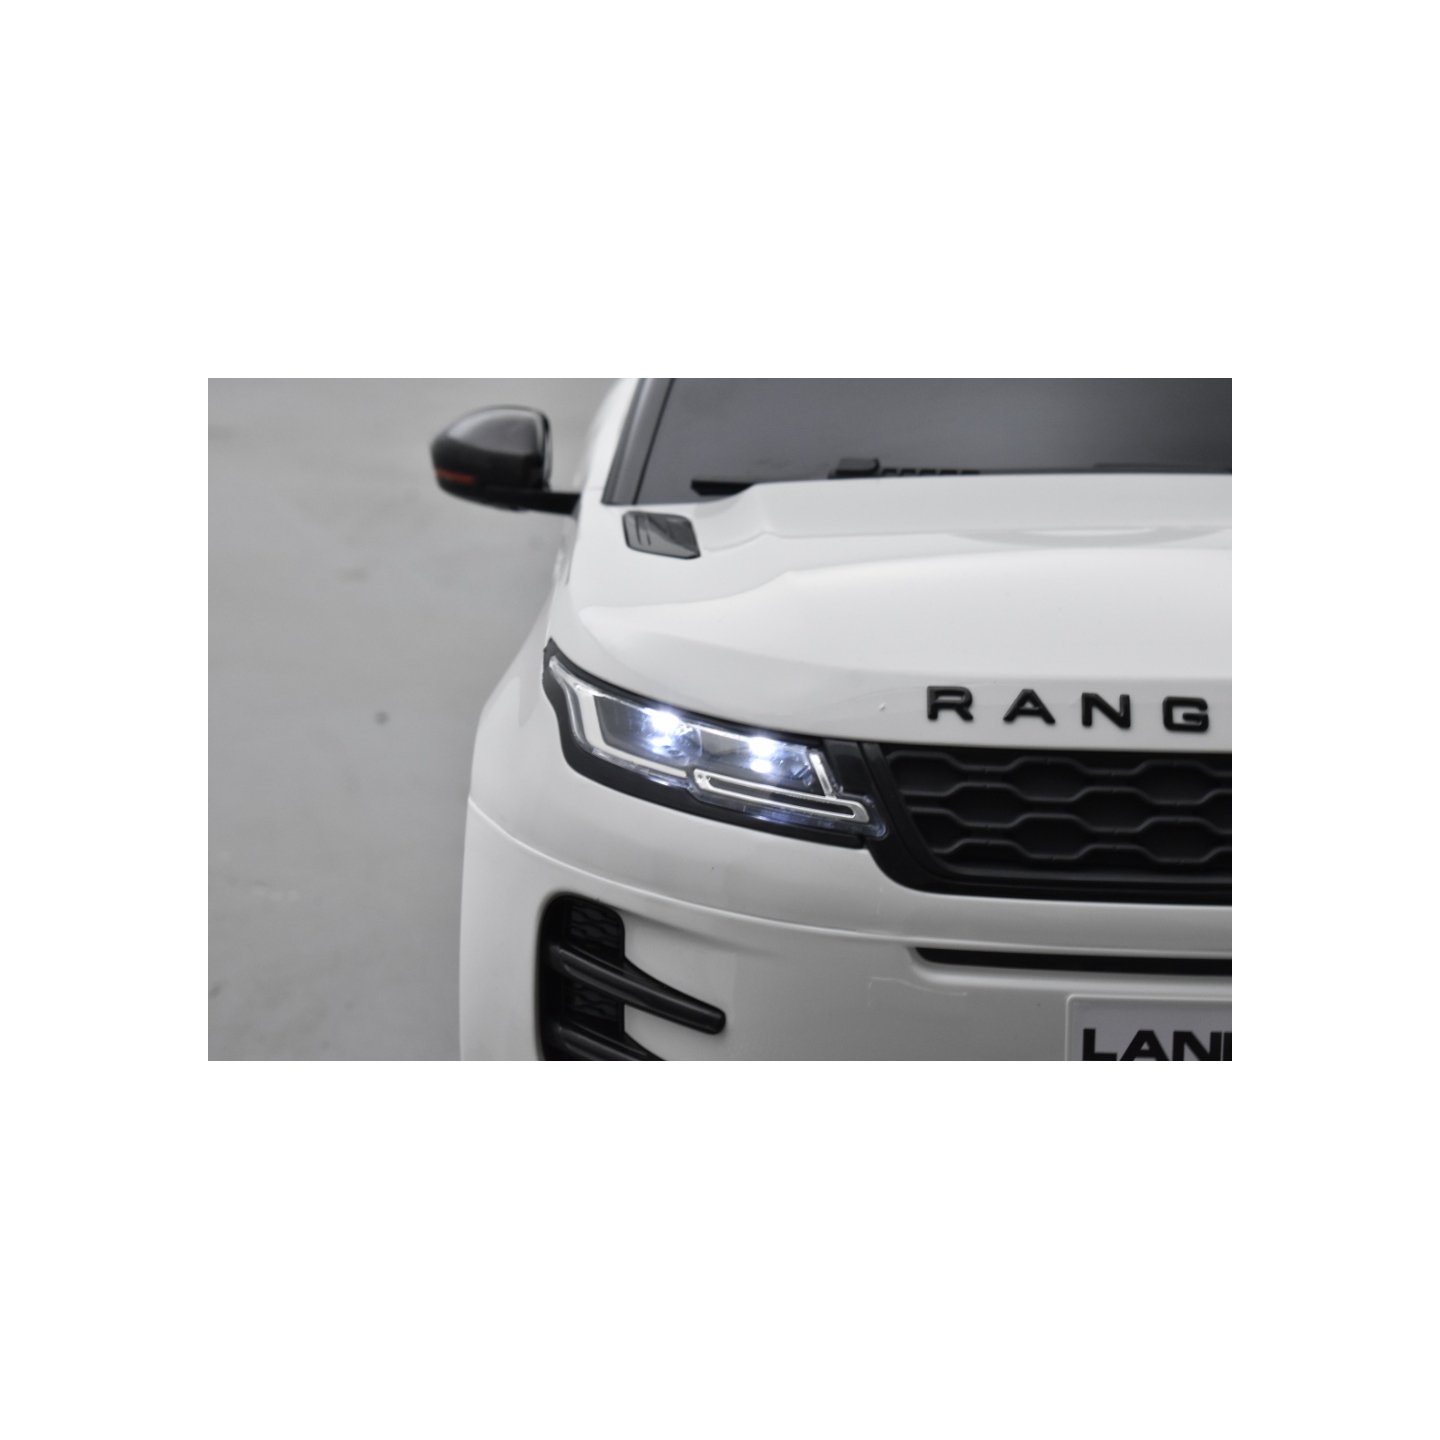 Range Rover Evoque Blanc, voiture électrique pour enfant 12 Volts